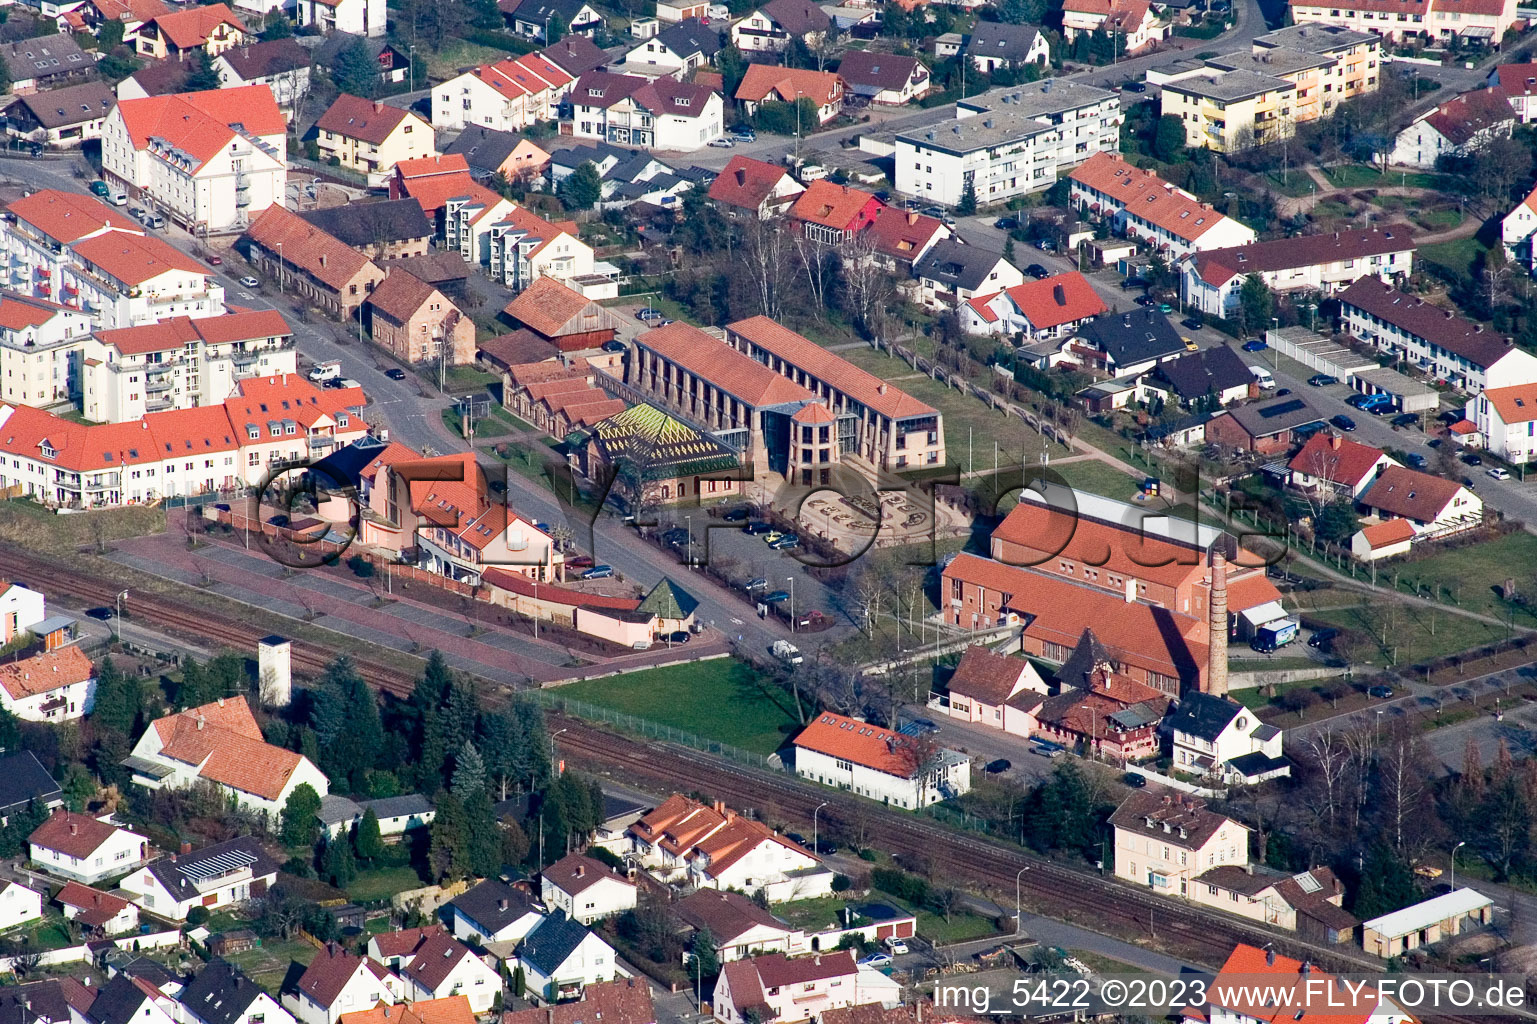 Vue aérienne de Musée de la Briqueterie, salle des fêtes du sud-ouest à Jockgrim dans le département Rhénanie-Palatinat, Allemagne